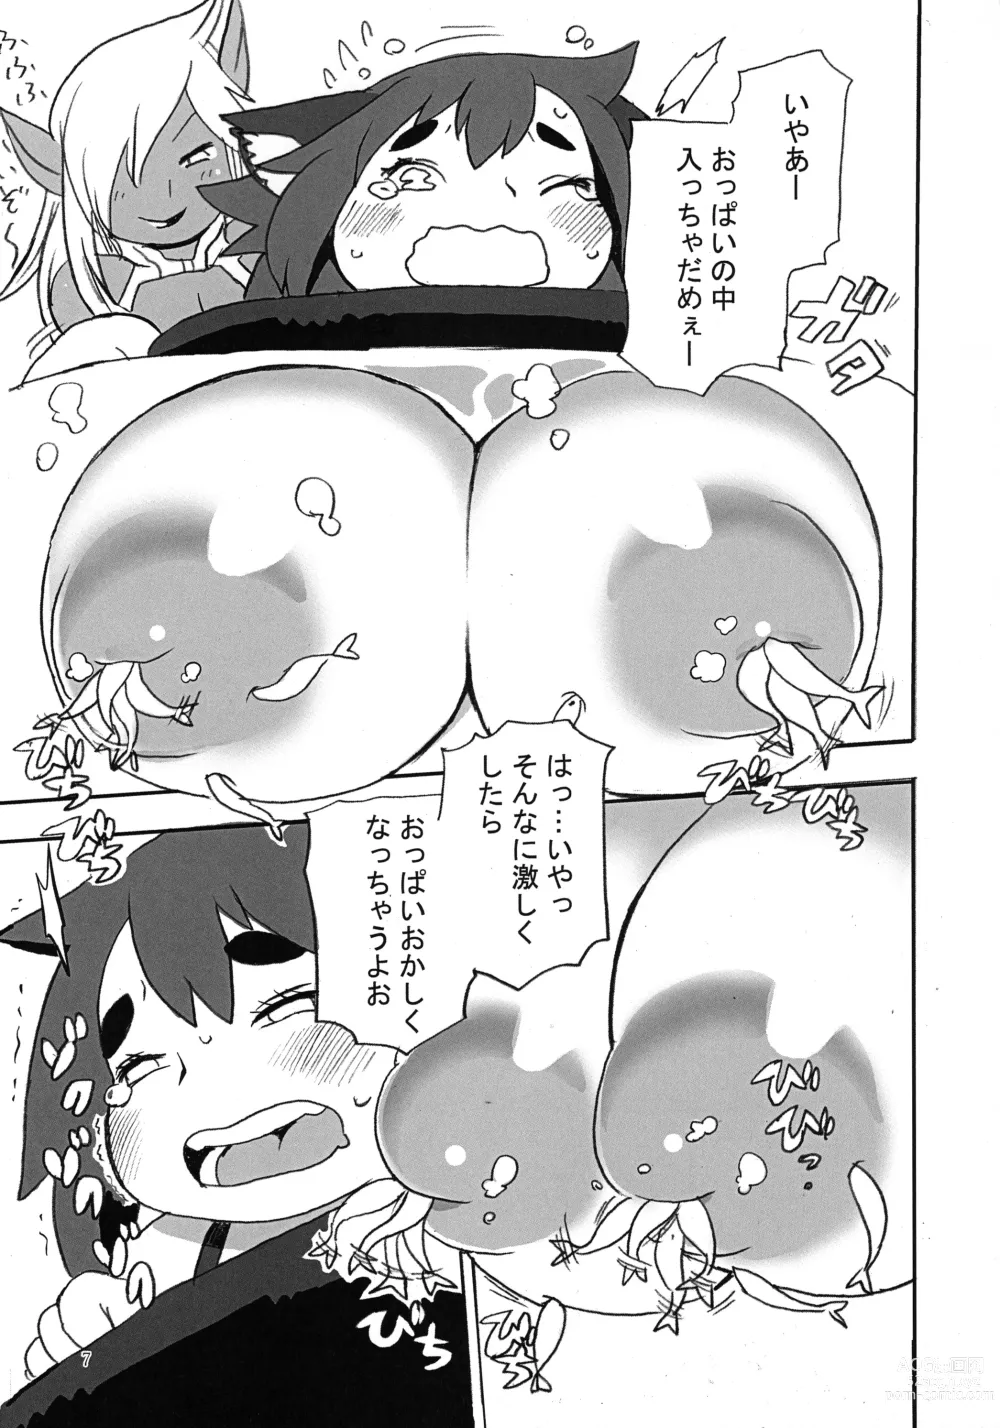 Page 7 of doujinshi GILDAS LAB 02